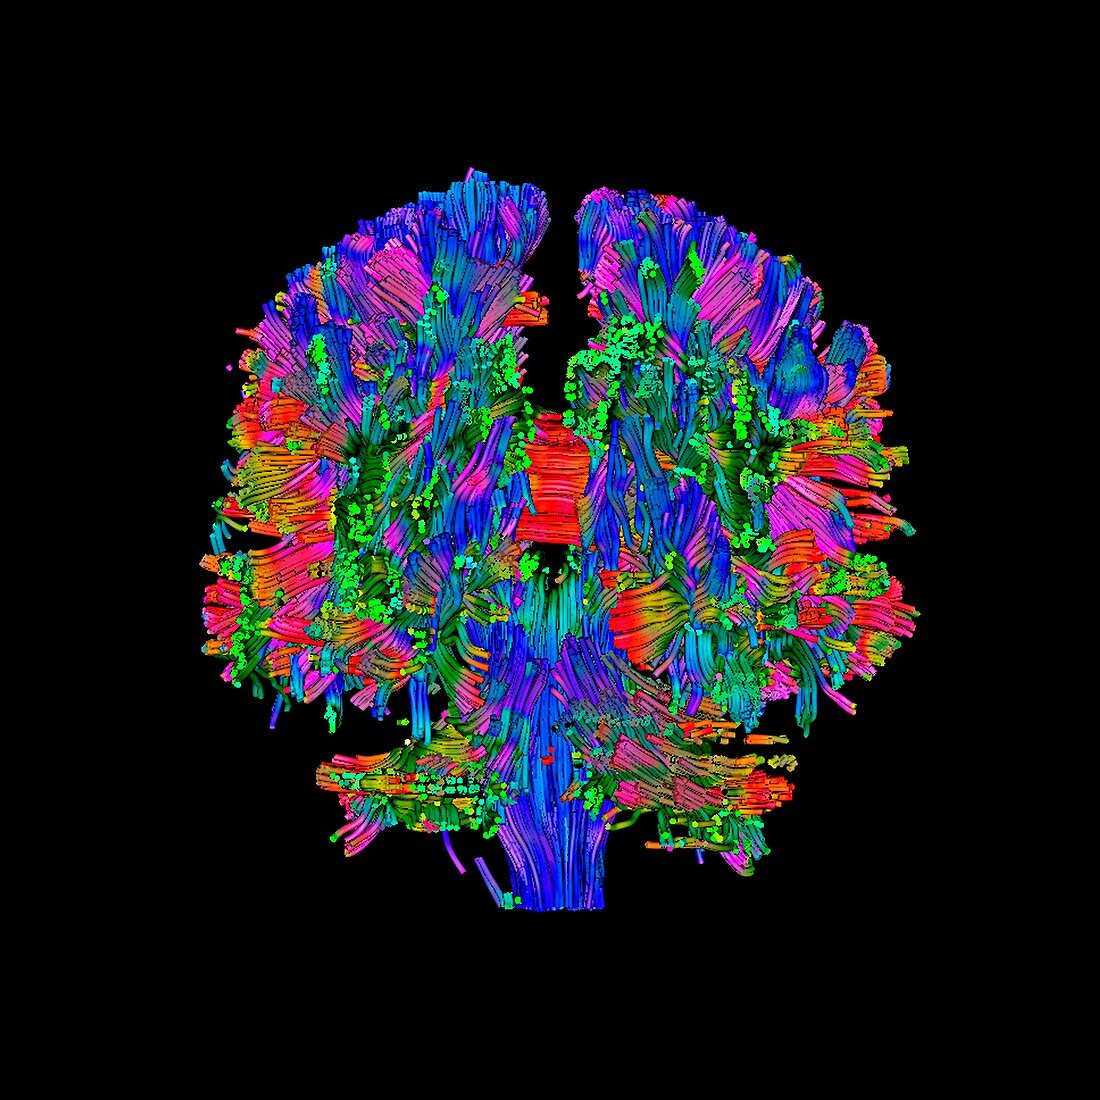 Brain tumour,DTI scan